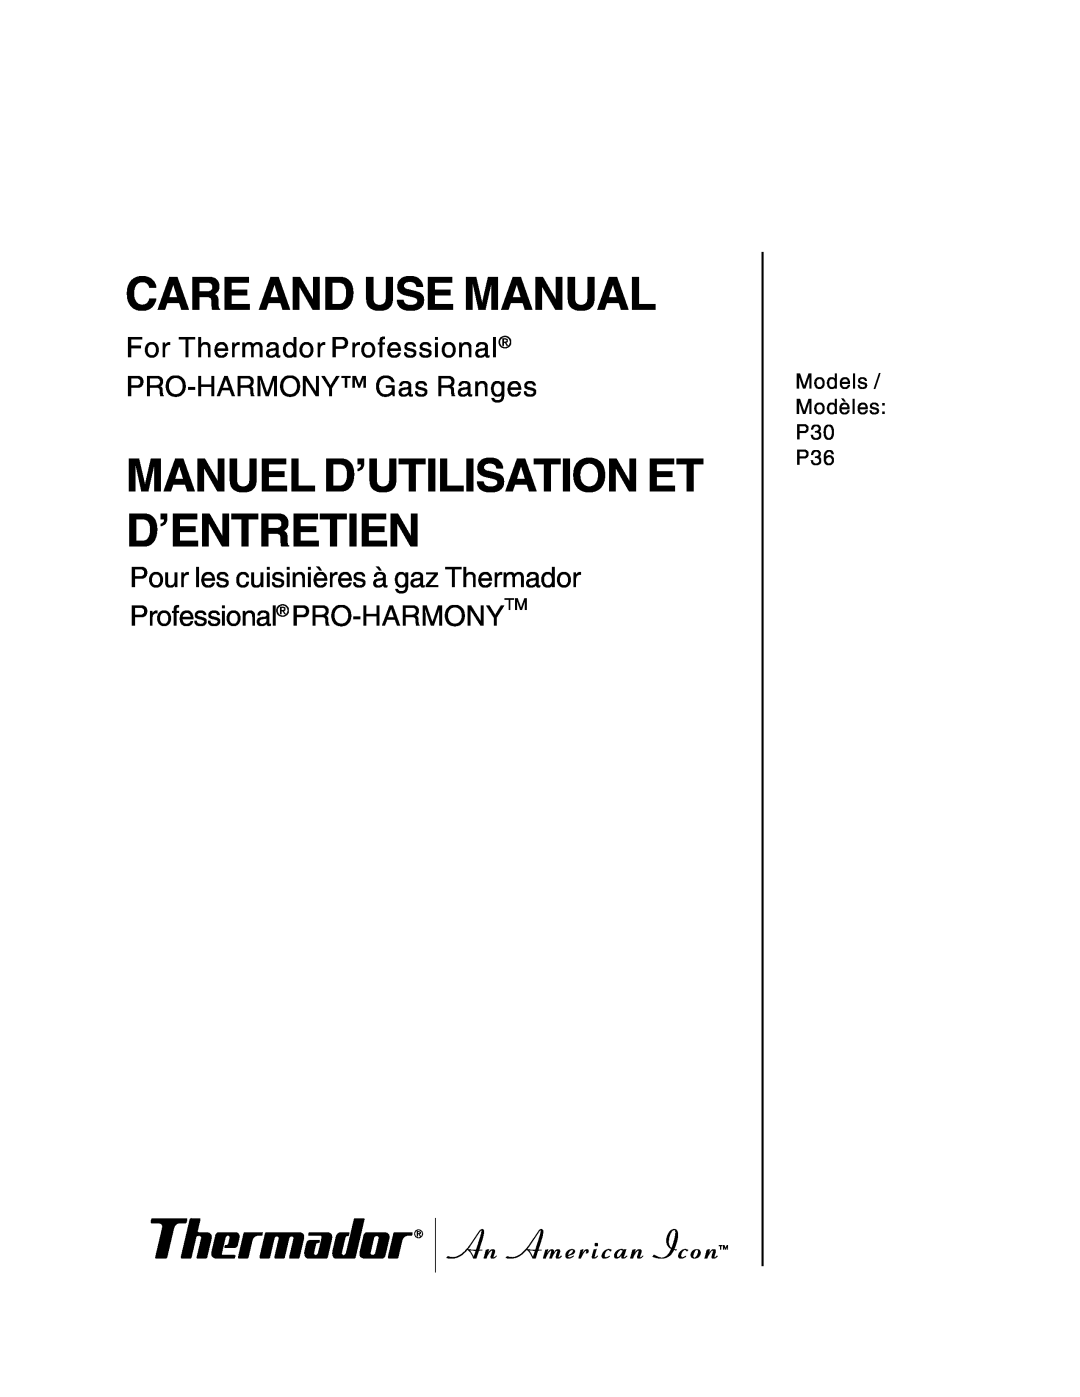 Thermador P30 P36 manuel dutilisation Care And Use Manual, Manuel D’Utilisation Et D’Entretien 